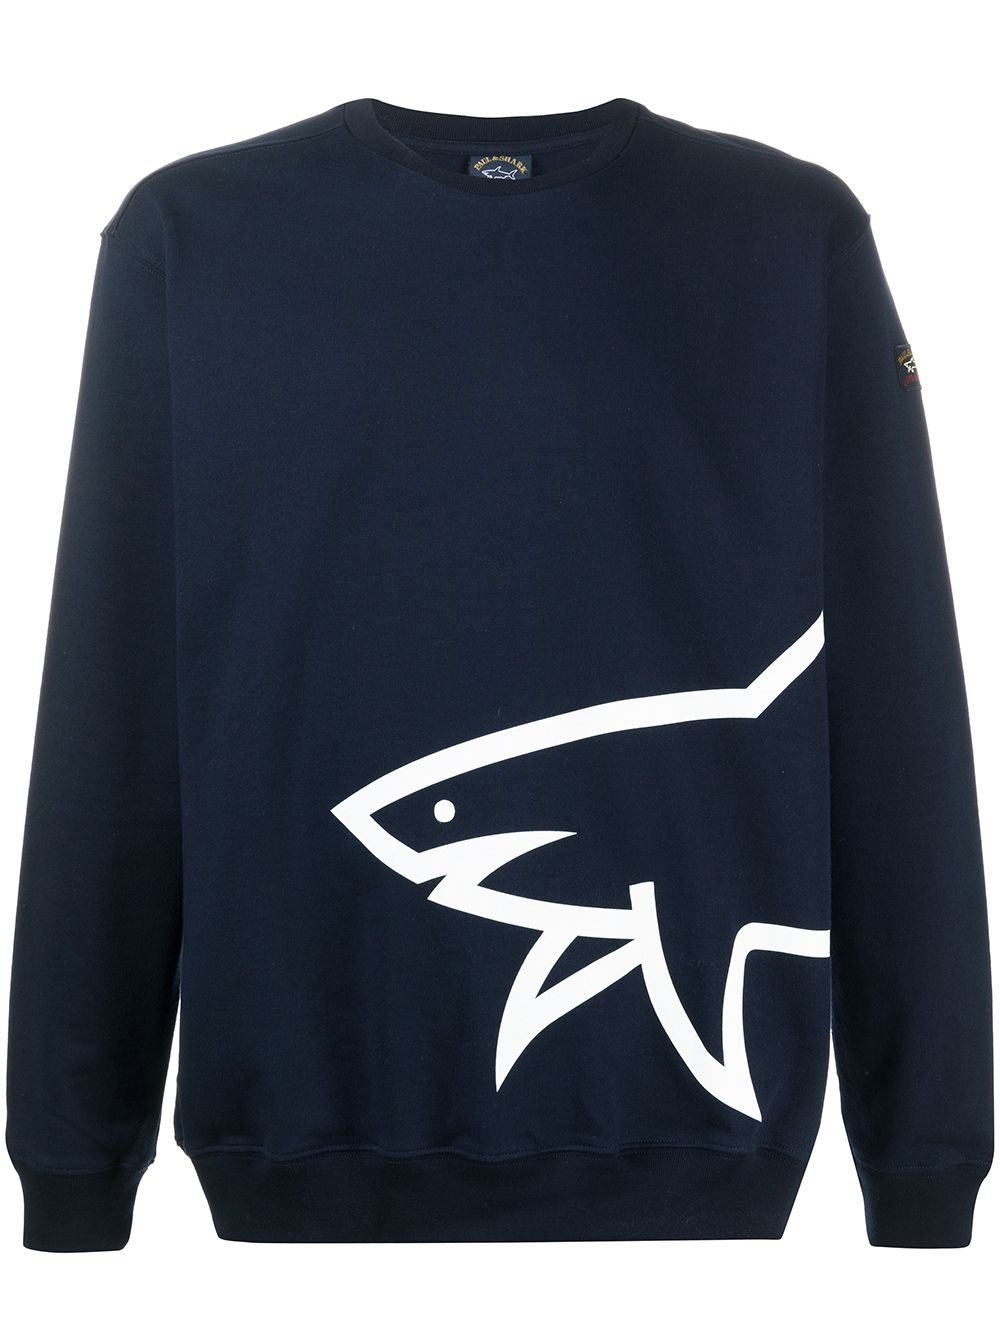 shark sweater